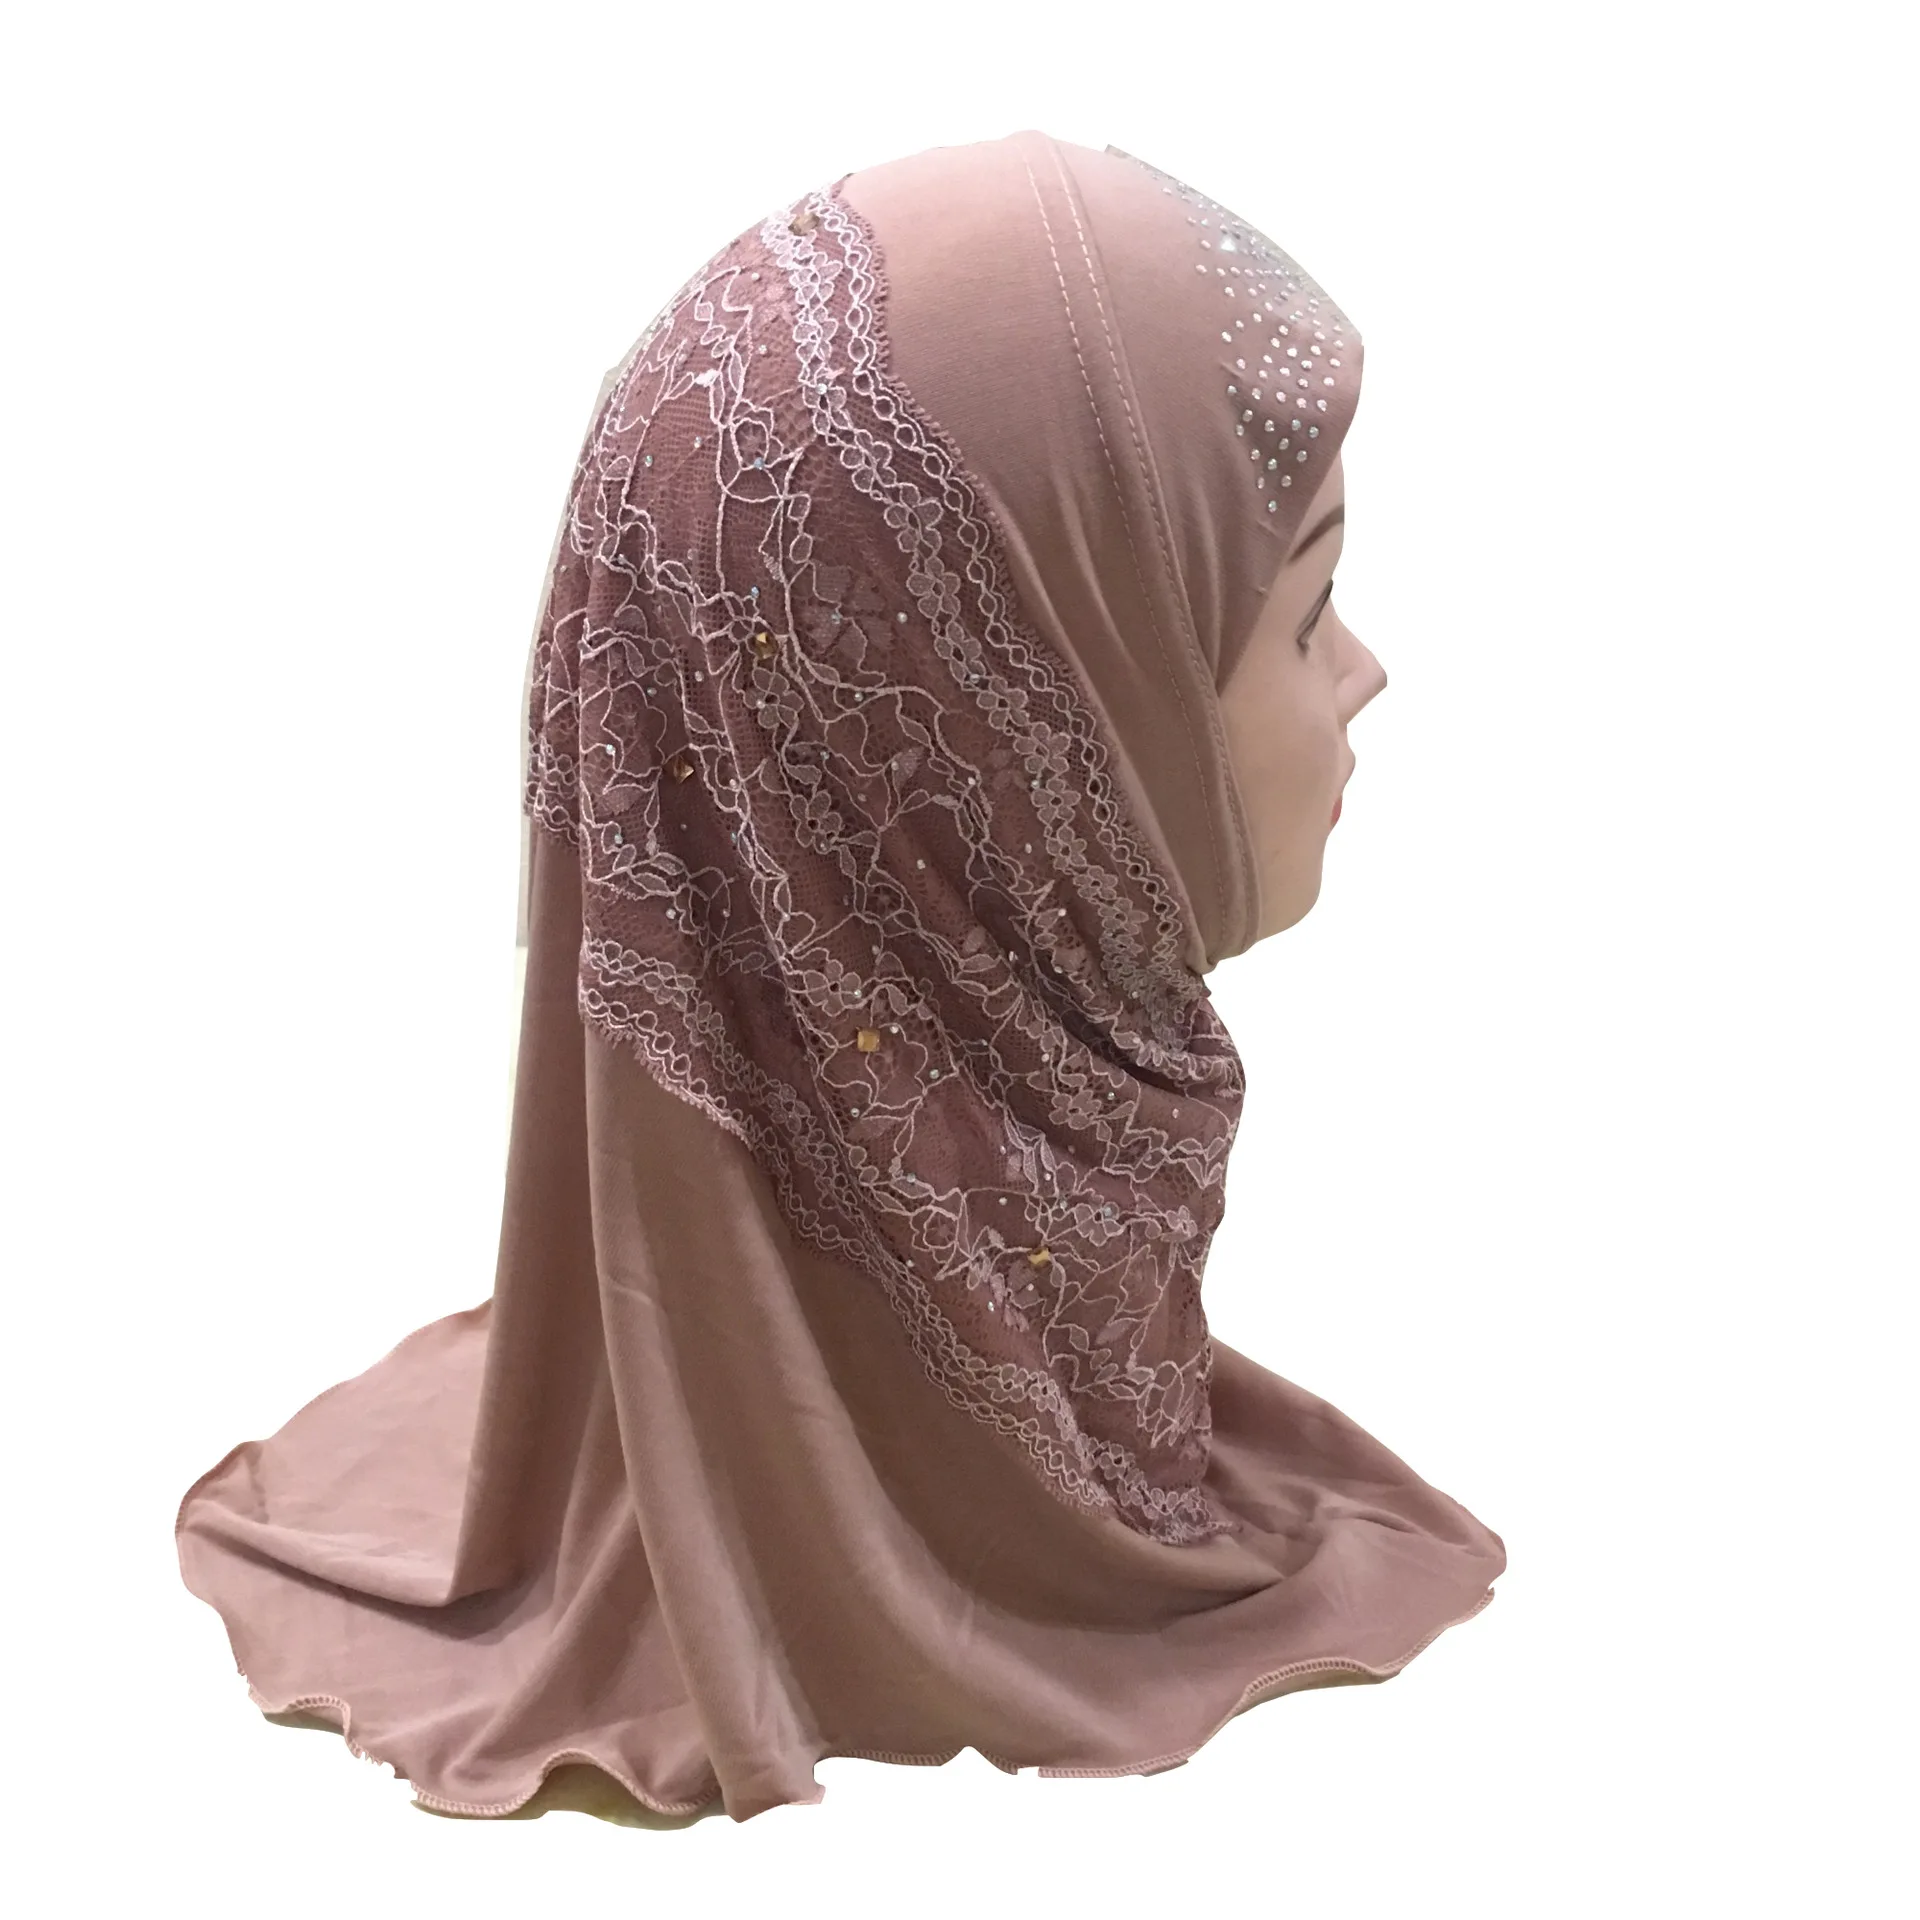 Можно выбрать цвета, красивый мусульманский хиджаб для маленькой девочки с кружевом и бисером, хиджаб для маленькой девочки